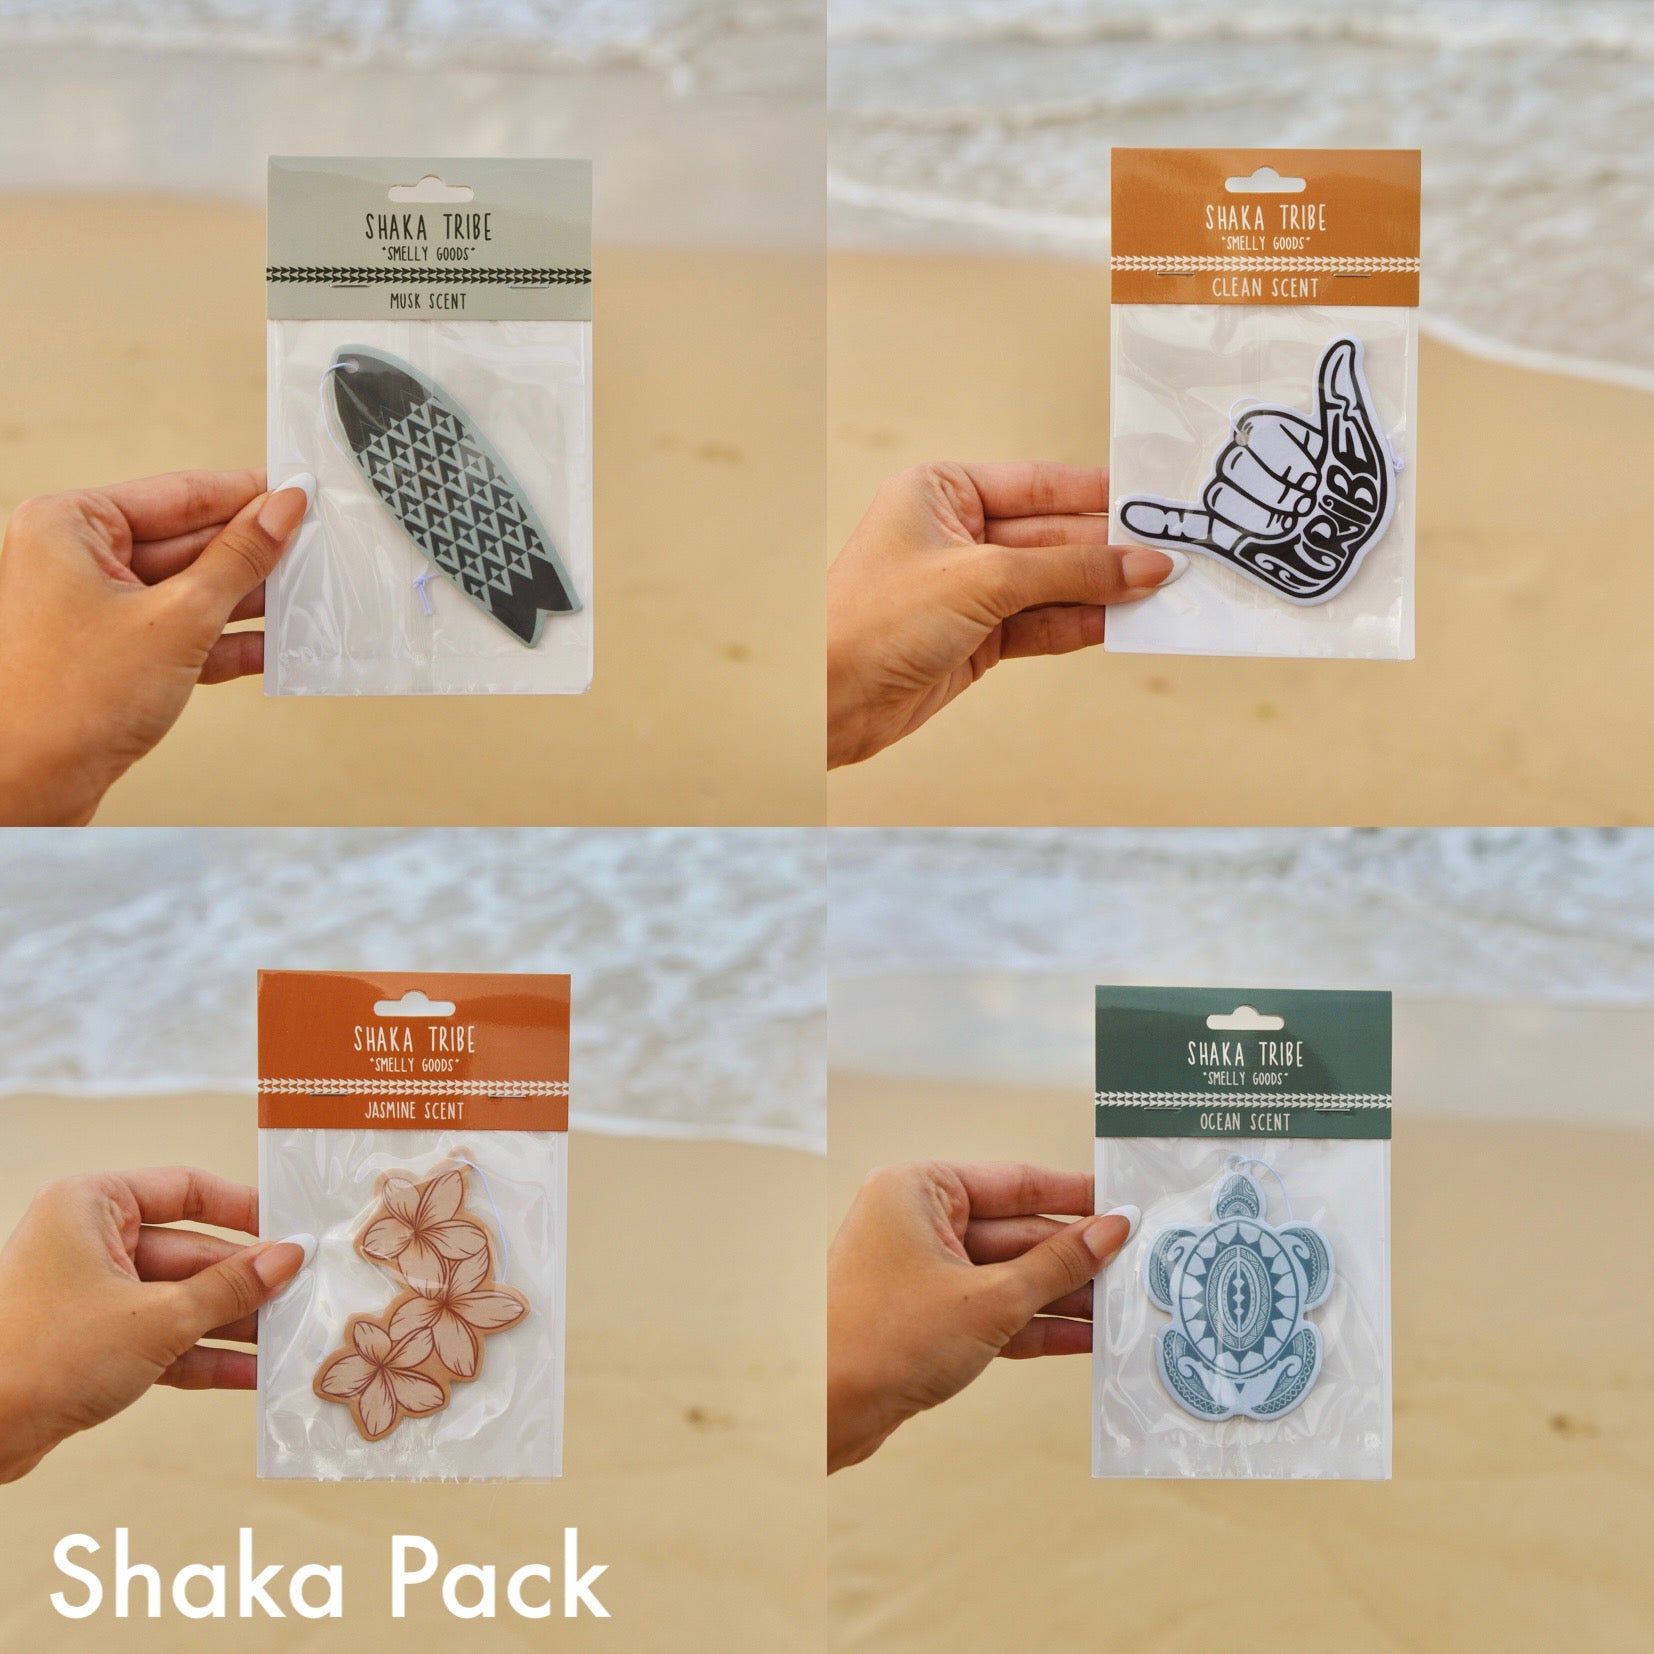 Shaka Pack- "Smelly Goods"